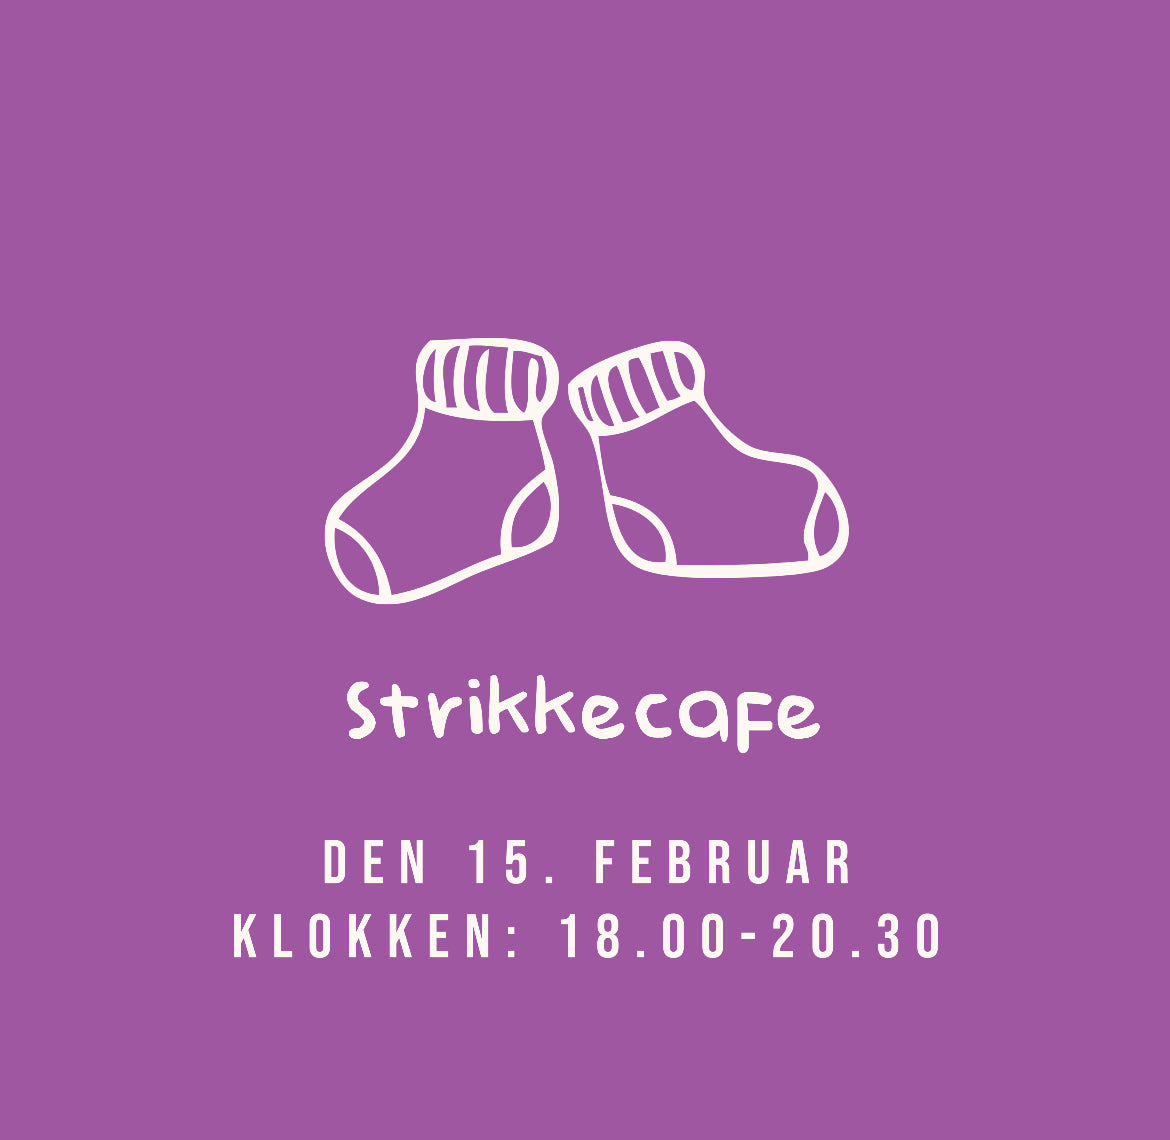 Workshop strikkecafe 15. februar